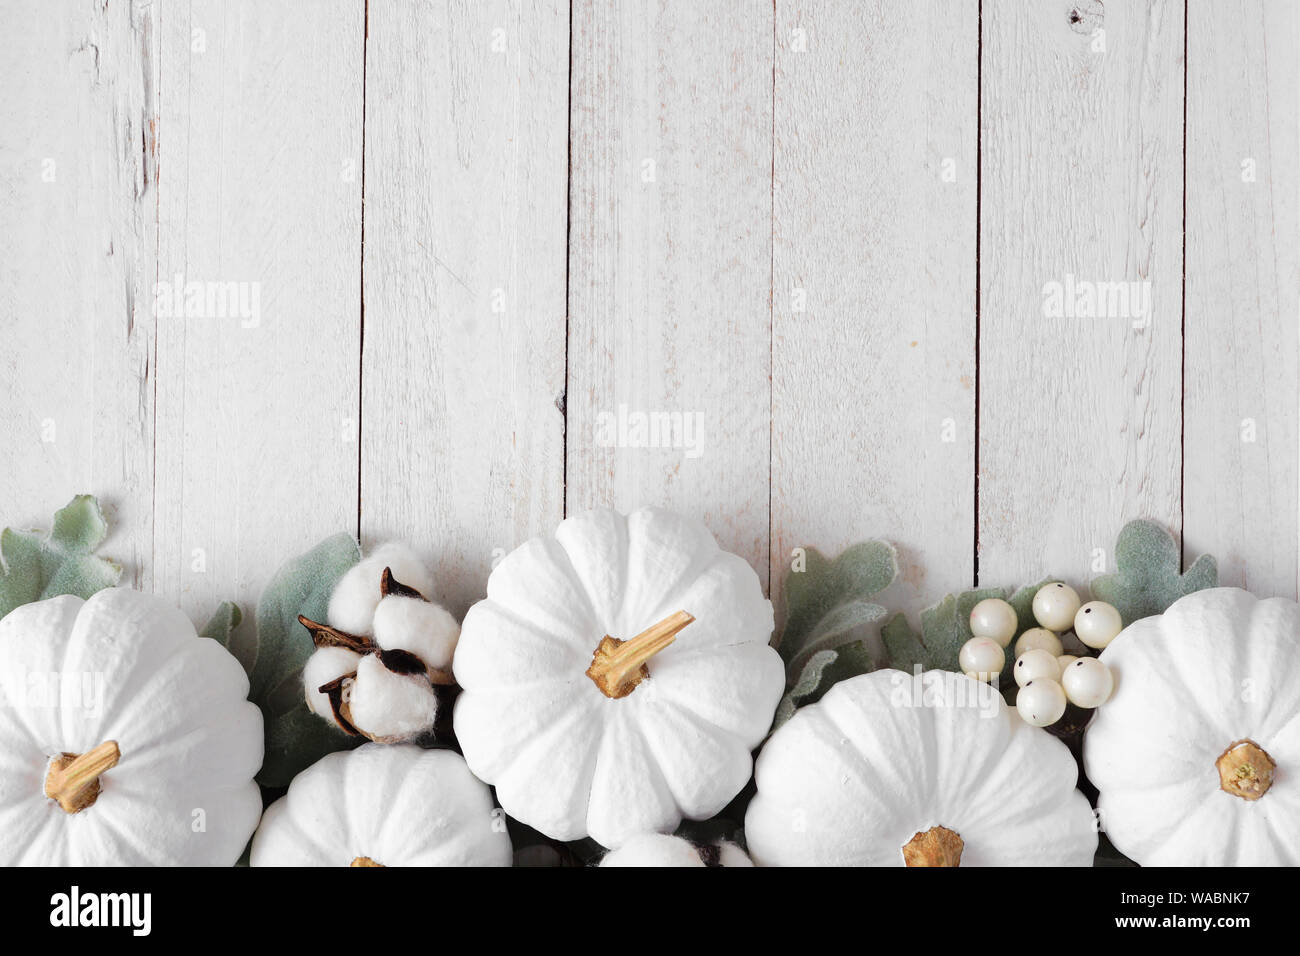 White Pumpkin Images  Free Download on Freepik